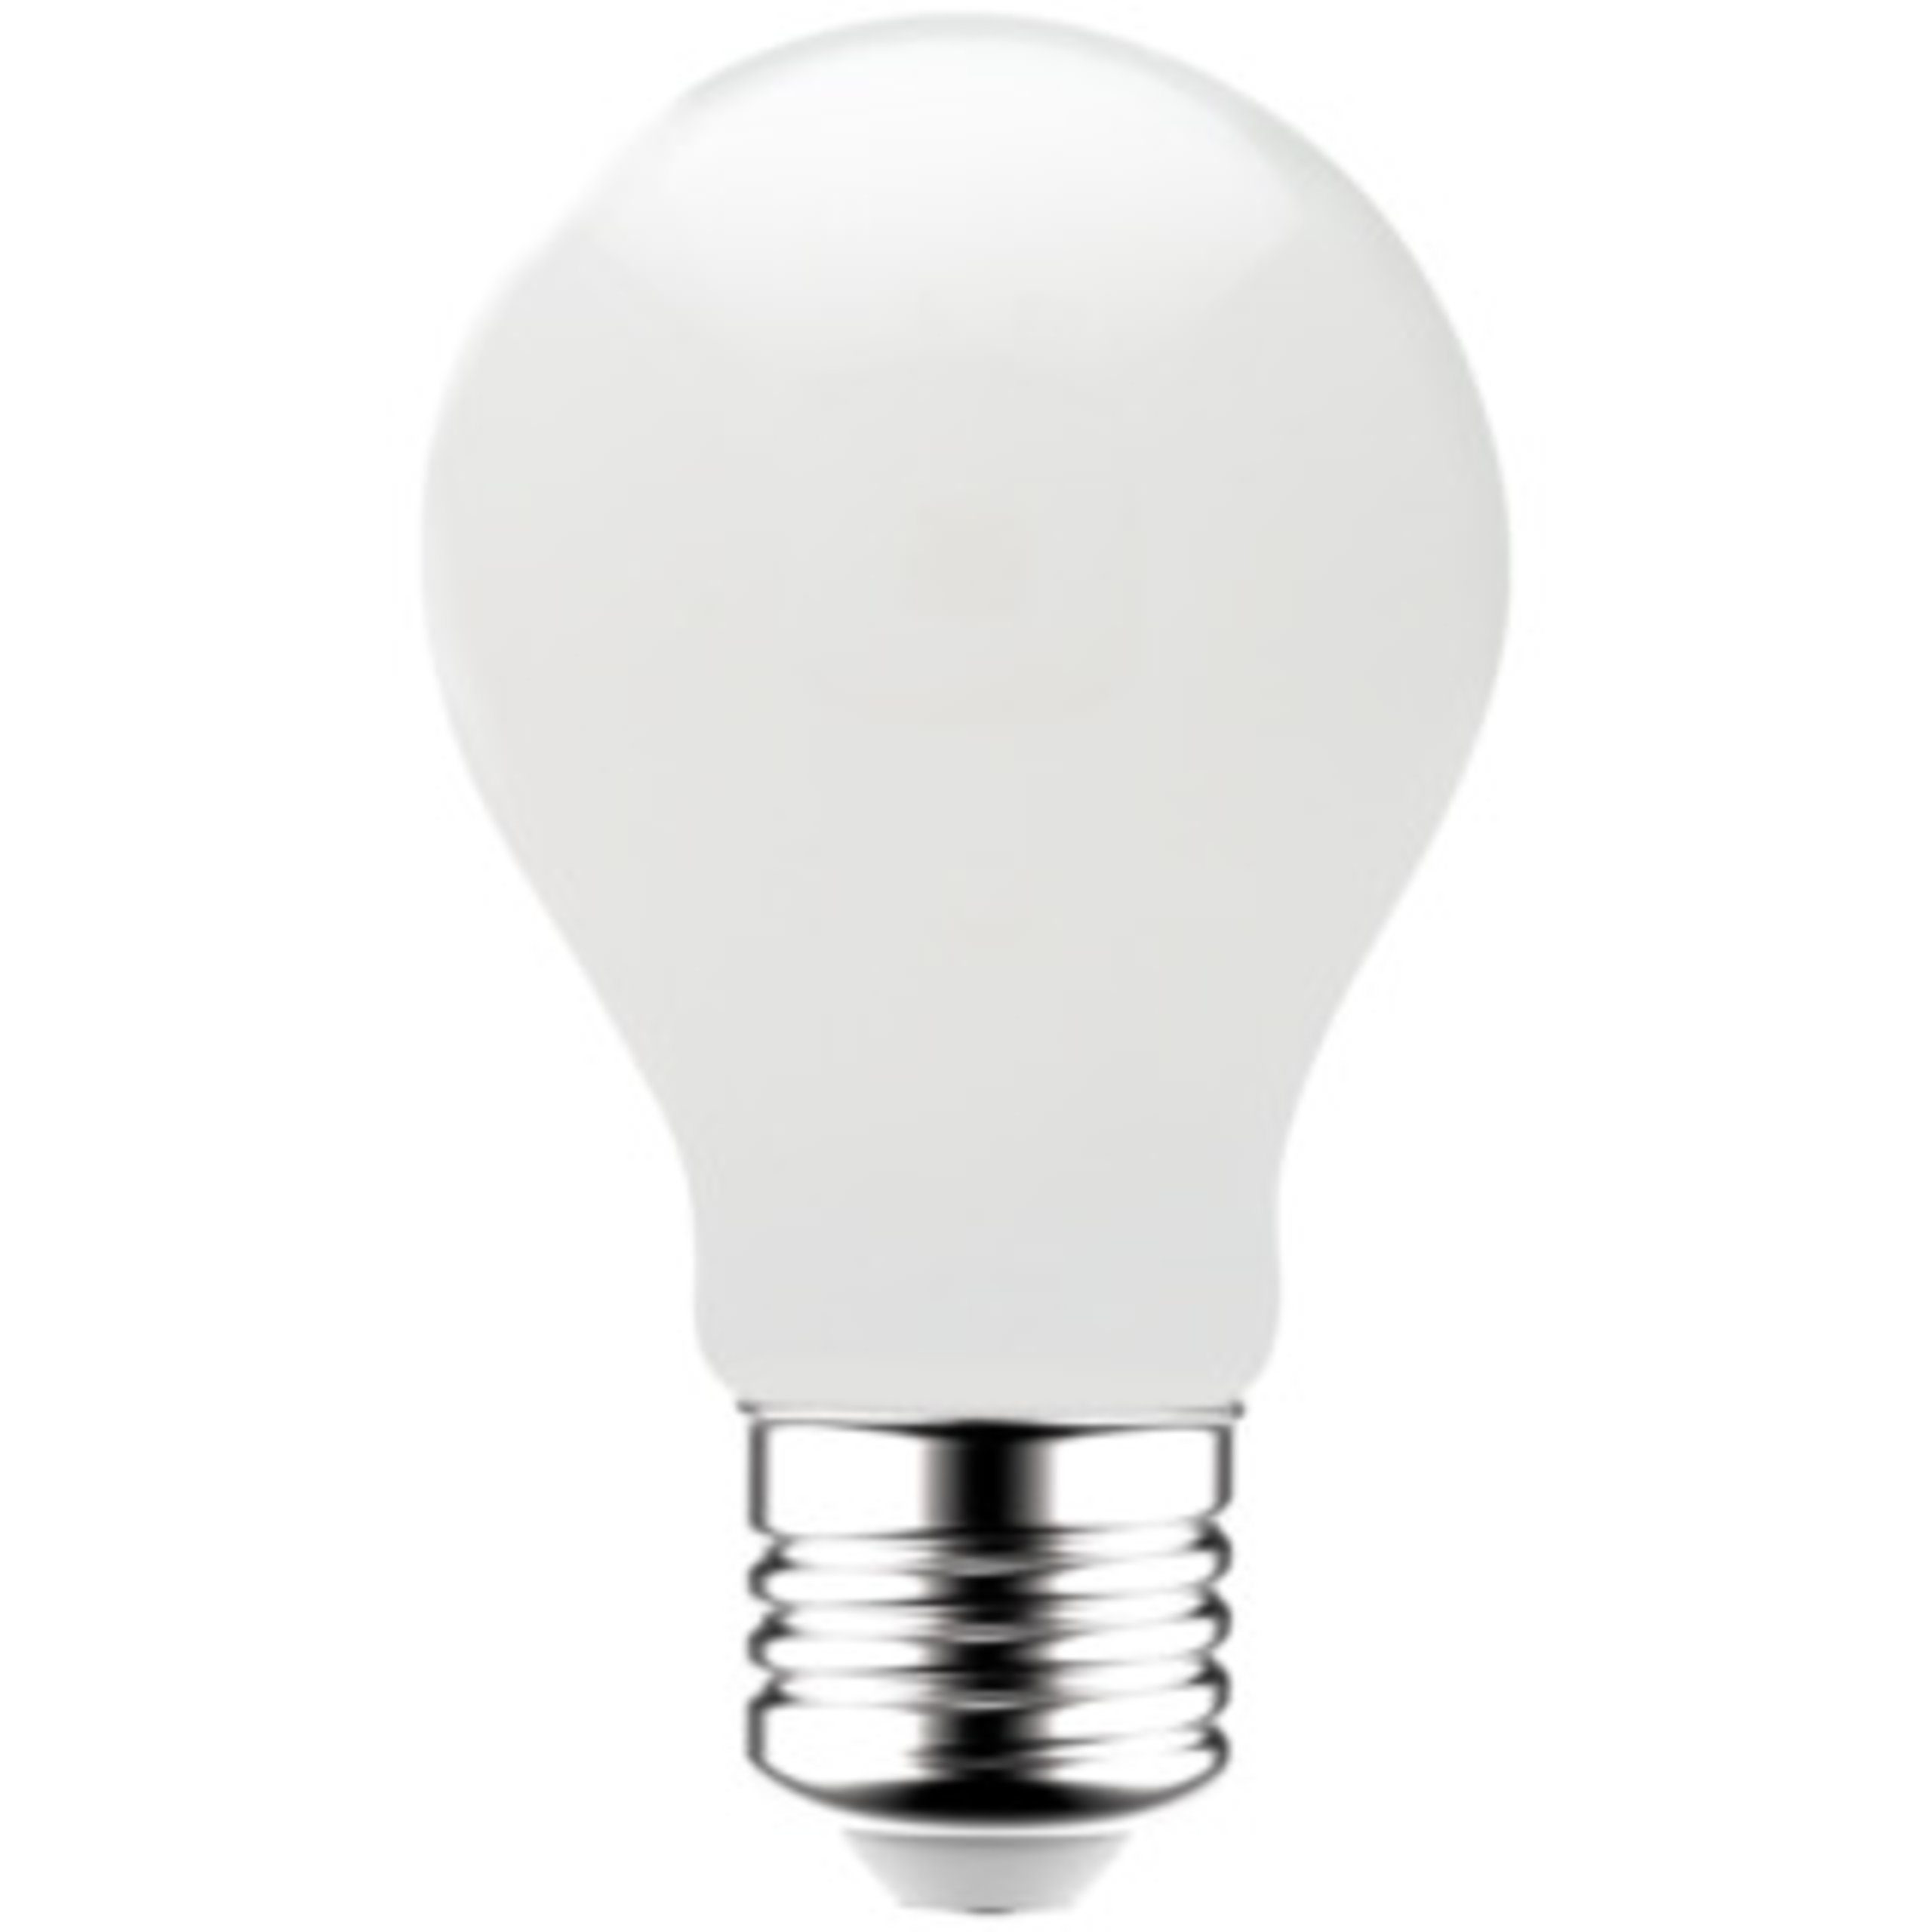 LED's light LED-Leuchtmittel 0620143 Glühbirne, warmweiß 7W Opal E27 A60 E27, LED